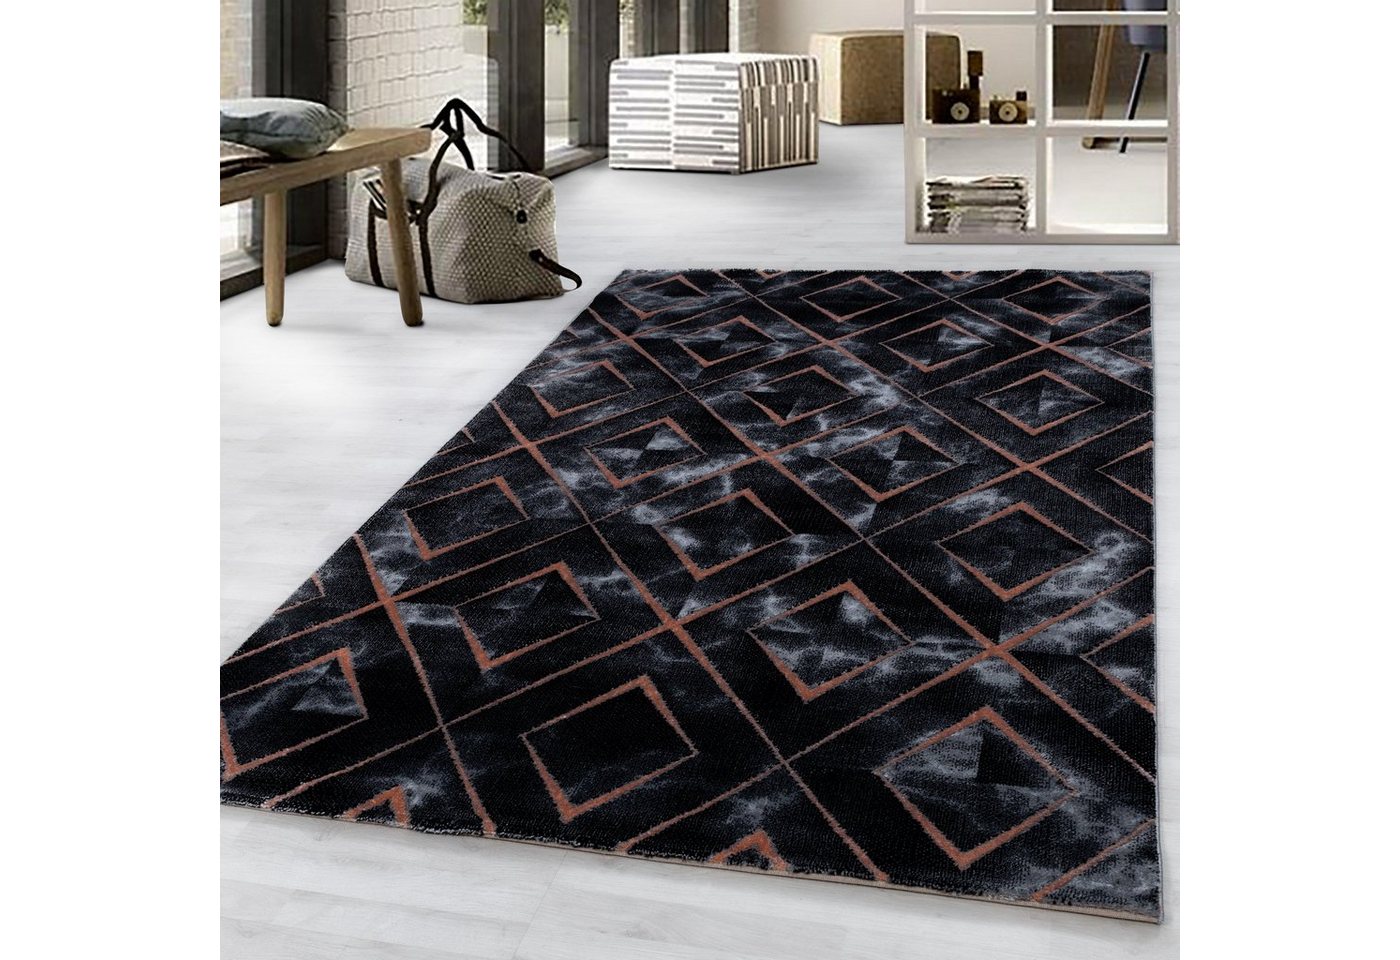 Designteppich Flachflorteppich Marmoroptik Wohnzimmer Kurzflorteppich Schlafzimmer, Miovani von Miovani